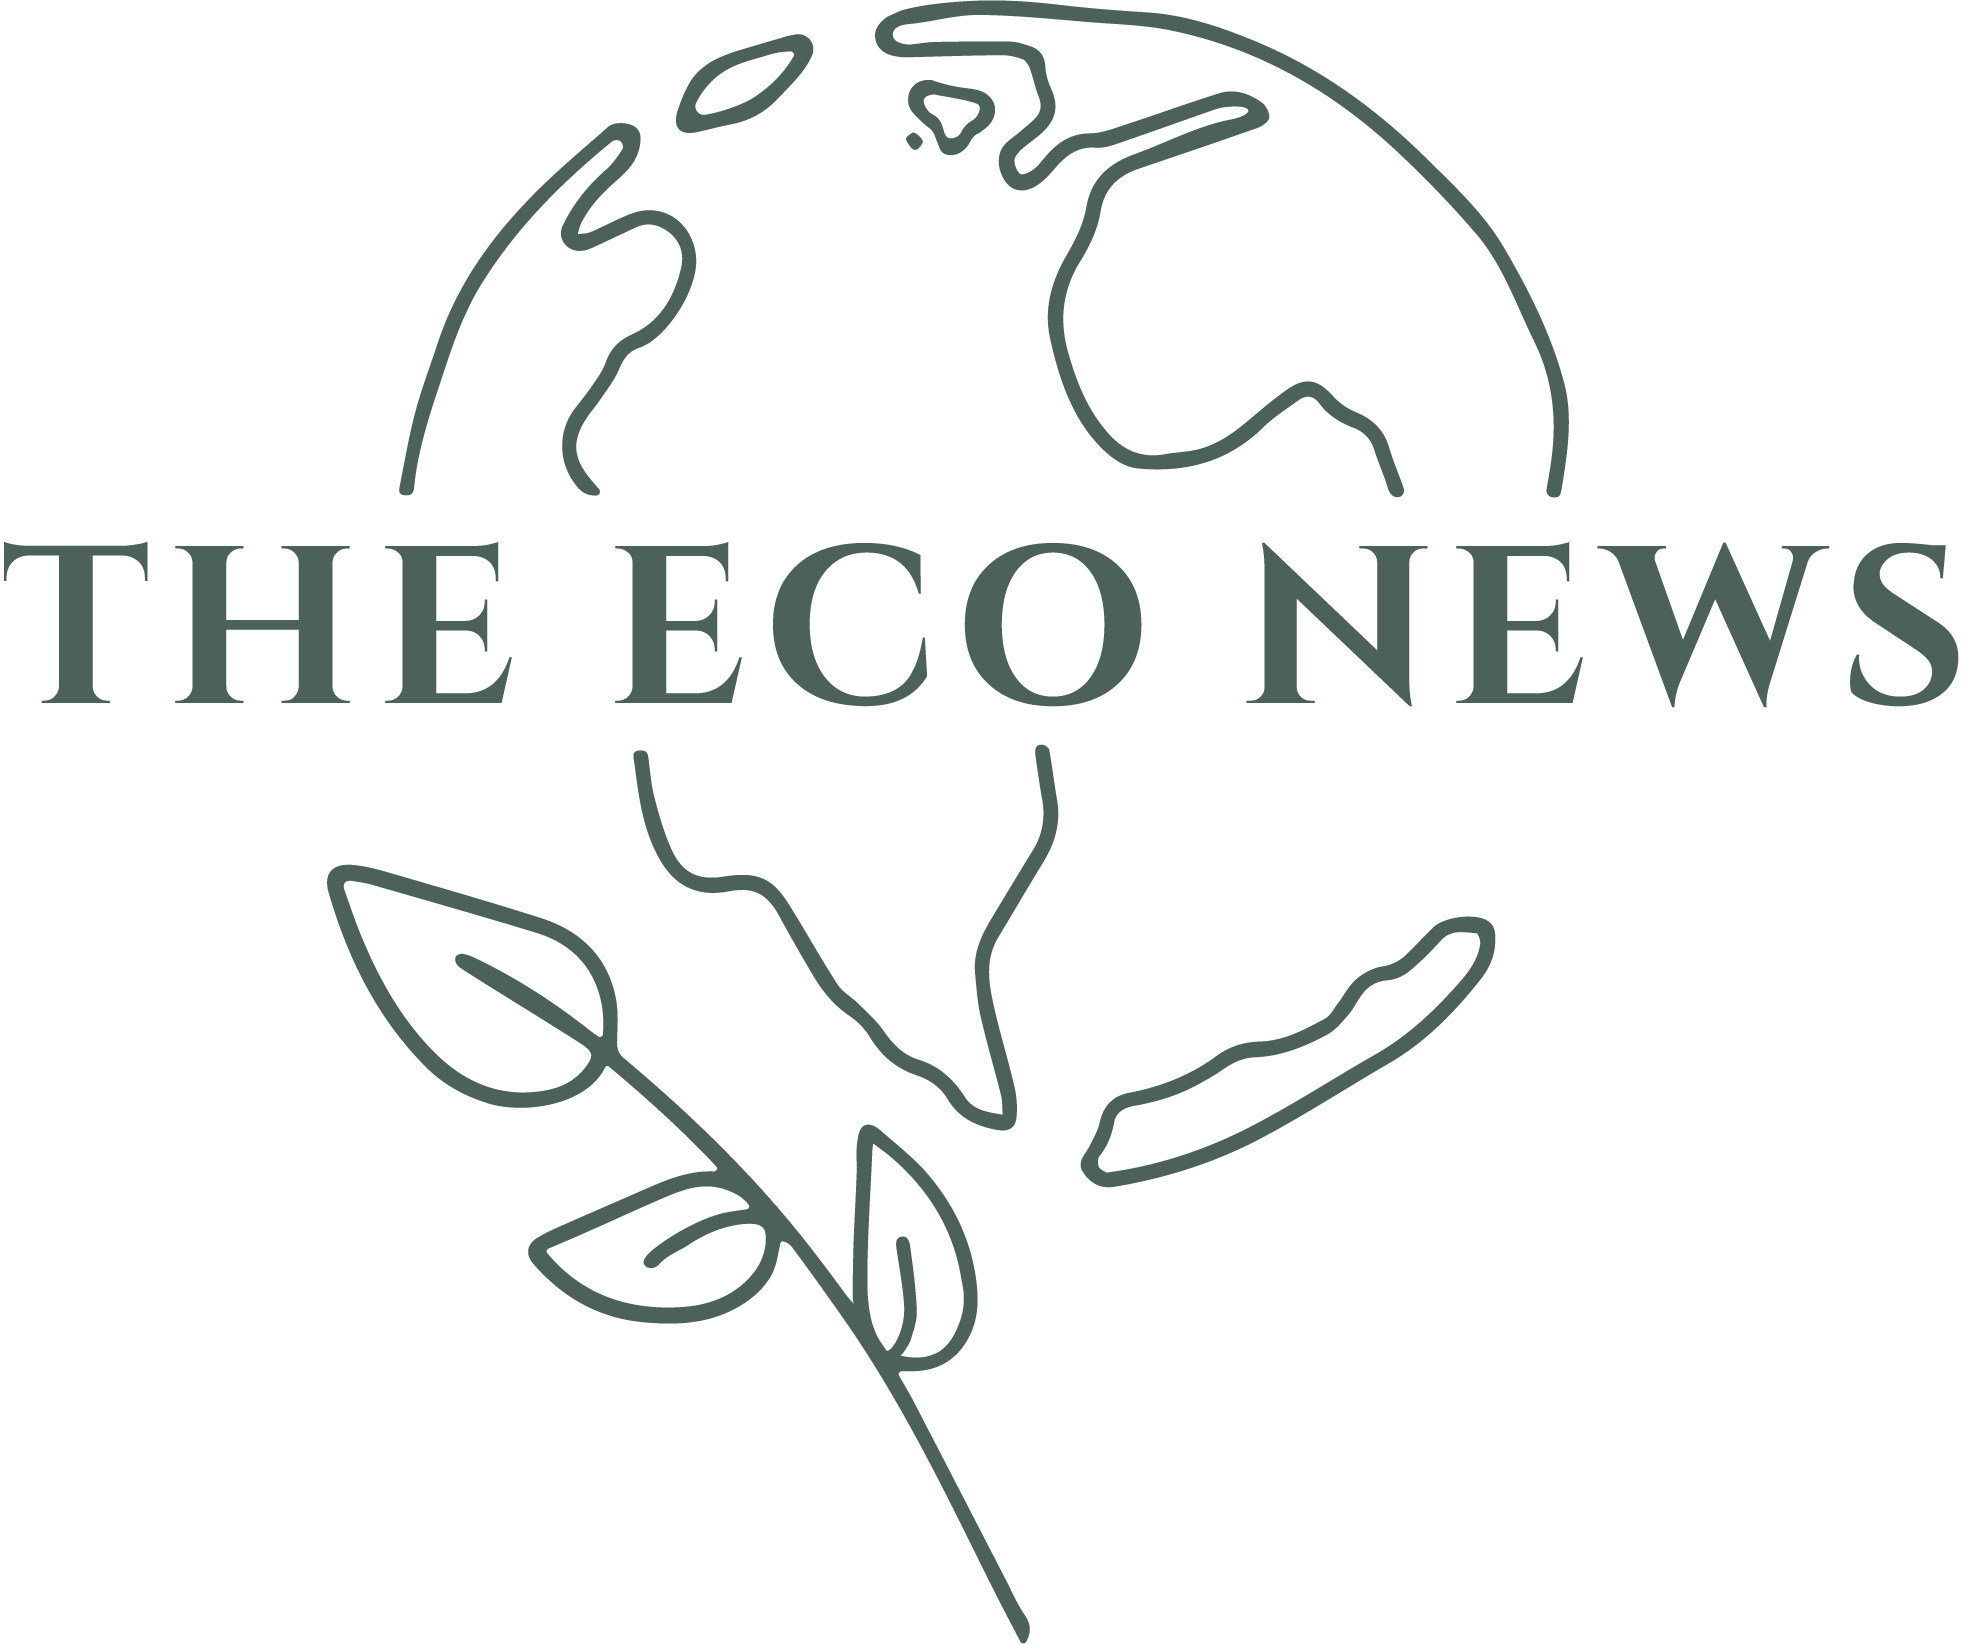 The Eco News